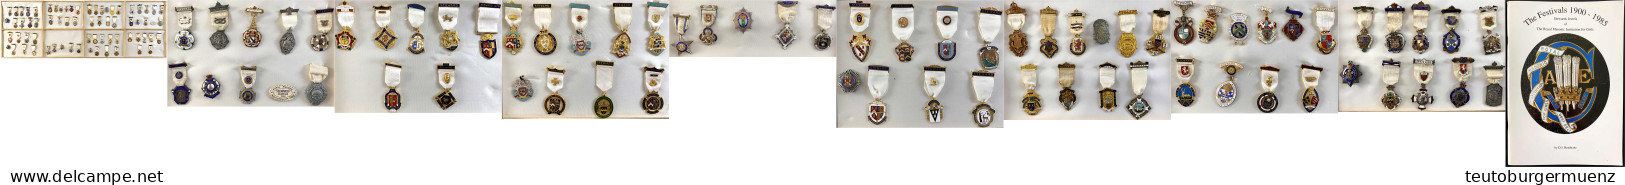 FREIMAURER: Große Sammlung Der Bijoux (Steward Jewels) Der "Royal Masonic Institution For Girls" Aus 1900 Bis 1985. Gesa - Ohne Zuordnung